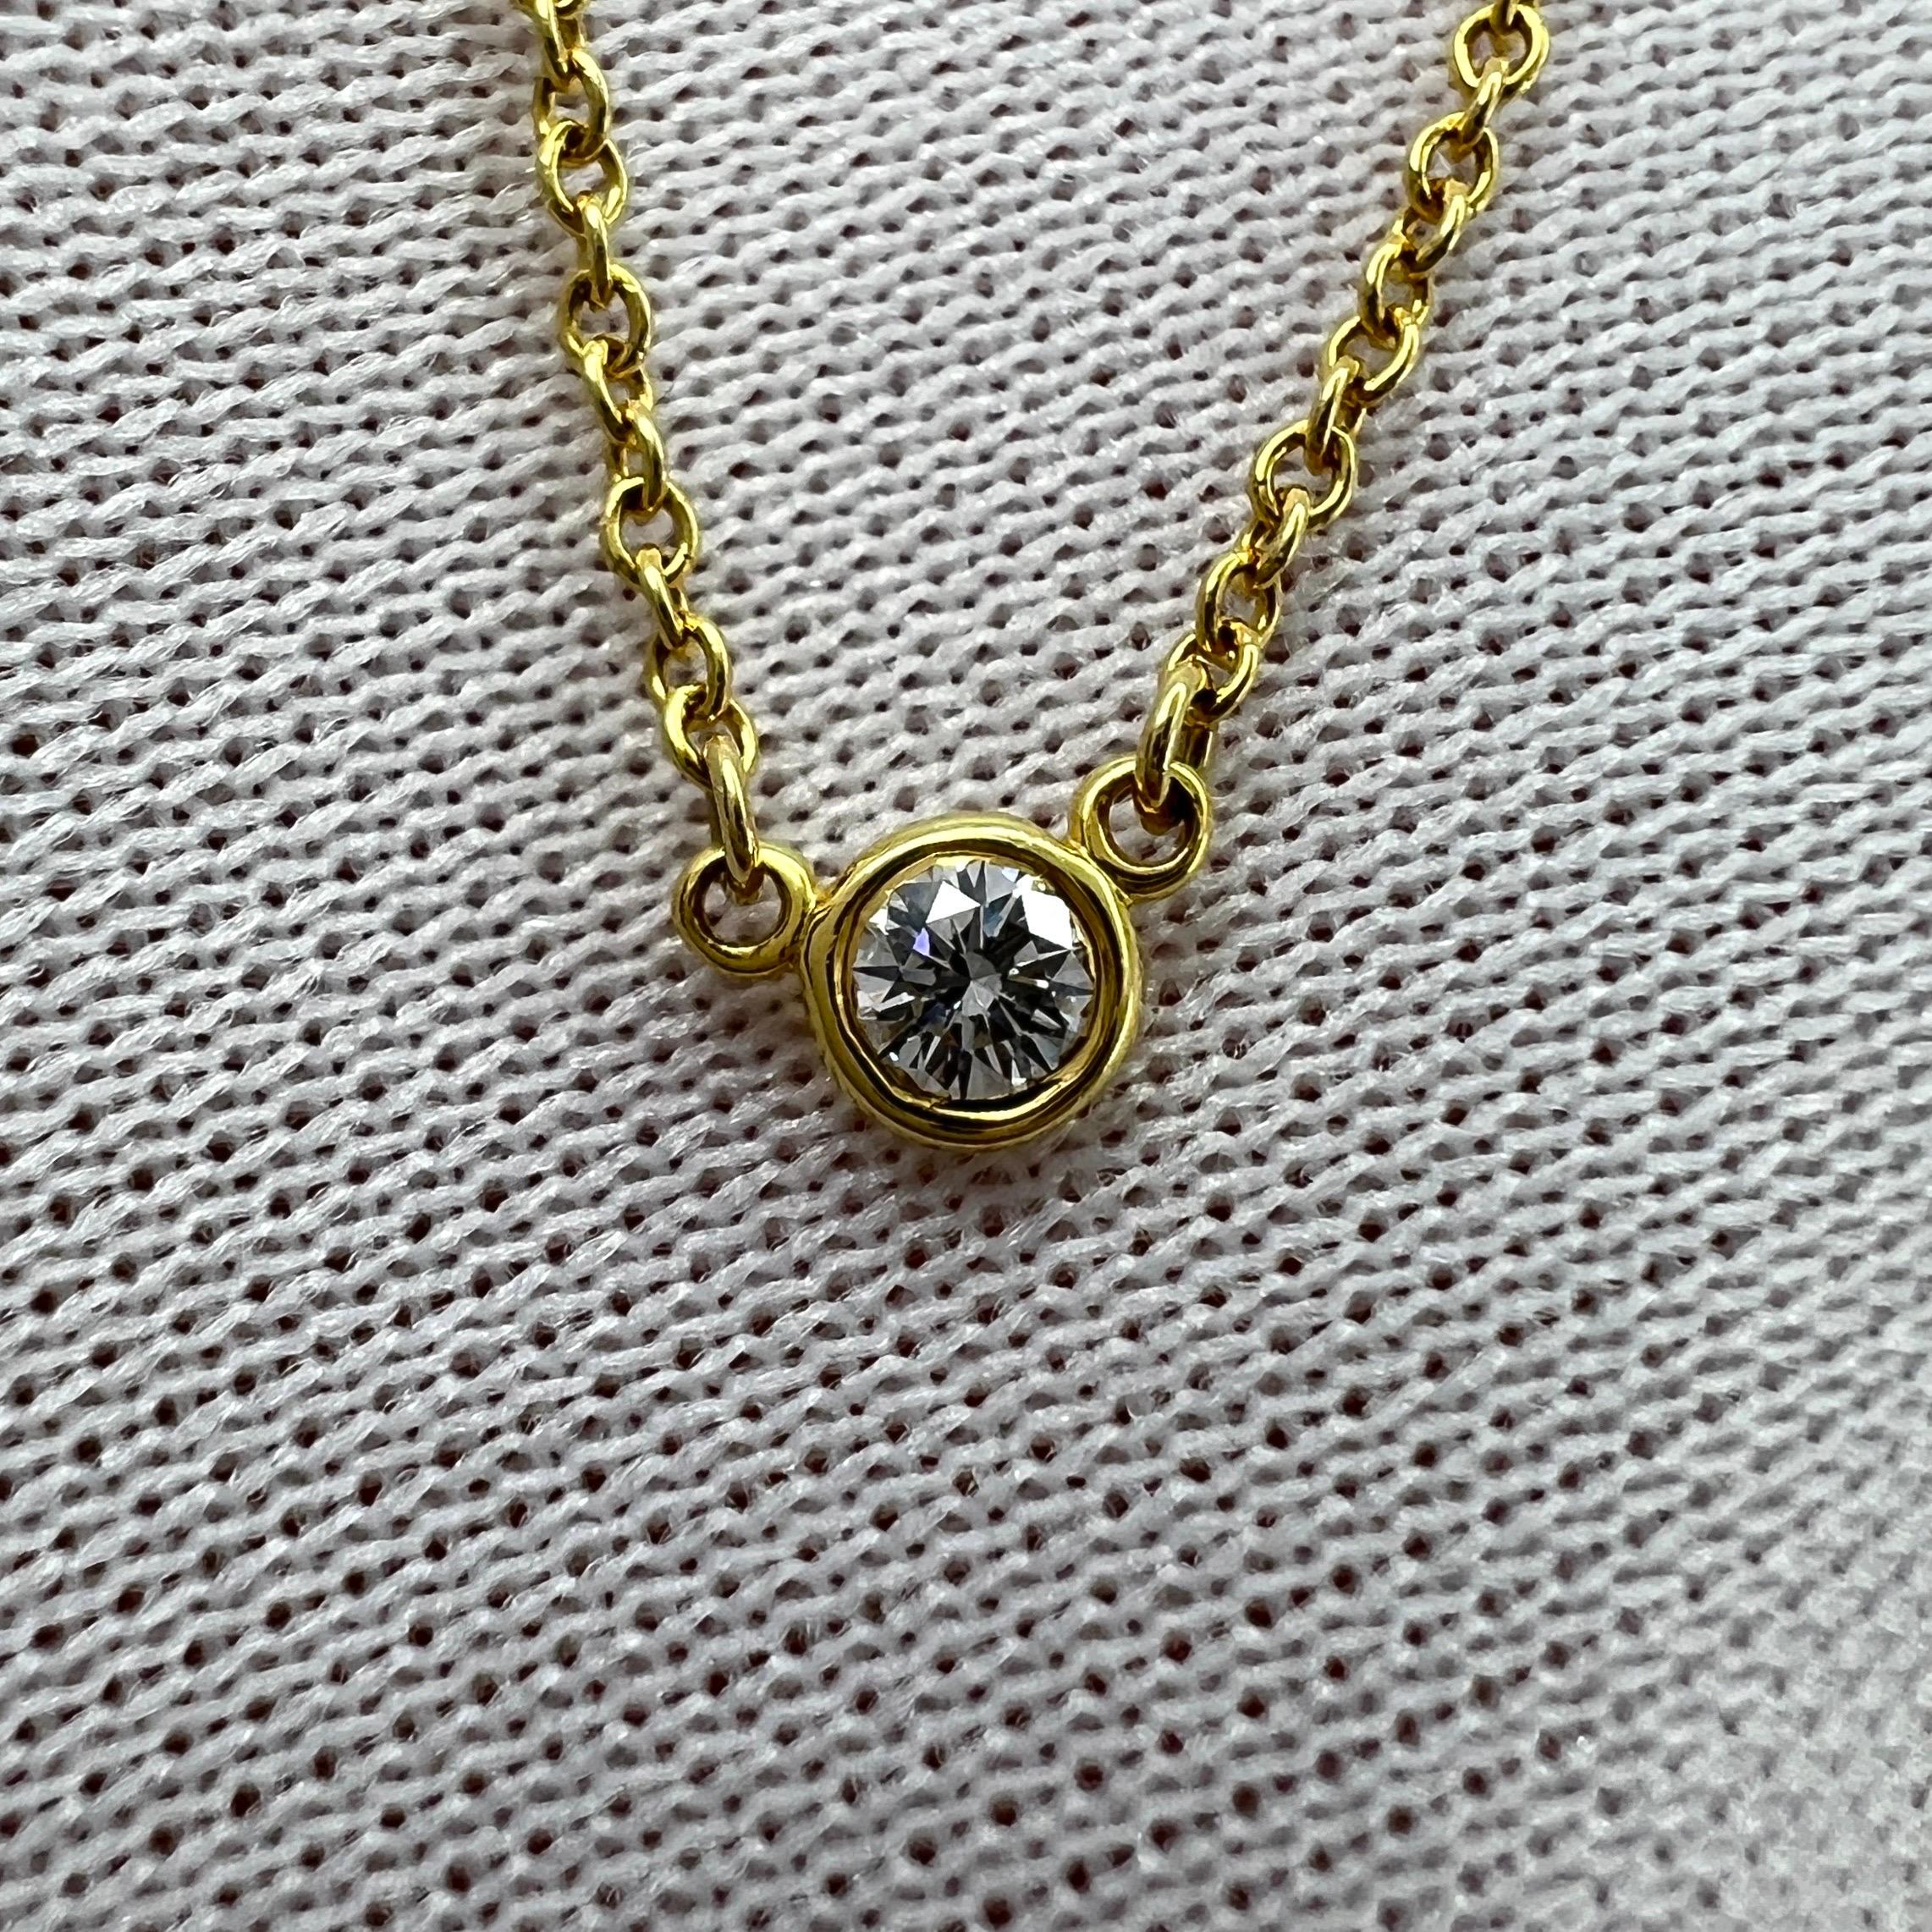 Vintage Tiffany & Co. Collier en or jaune 18k Elsa Peretti By The Yard à diamants ronds.

Magnifique collier pendentif en or jaune 18 carats serti d'un superbe diamant blanc rond mesurant 3,5 mm.
Un collier subtil et délicat. Très tendance en ce